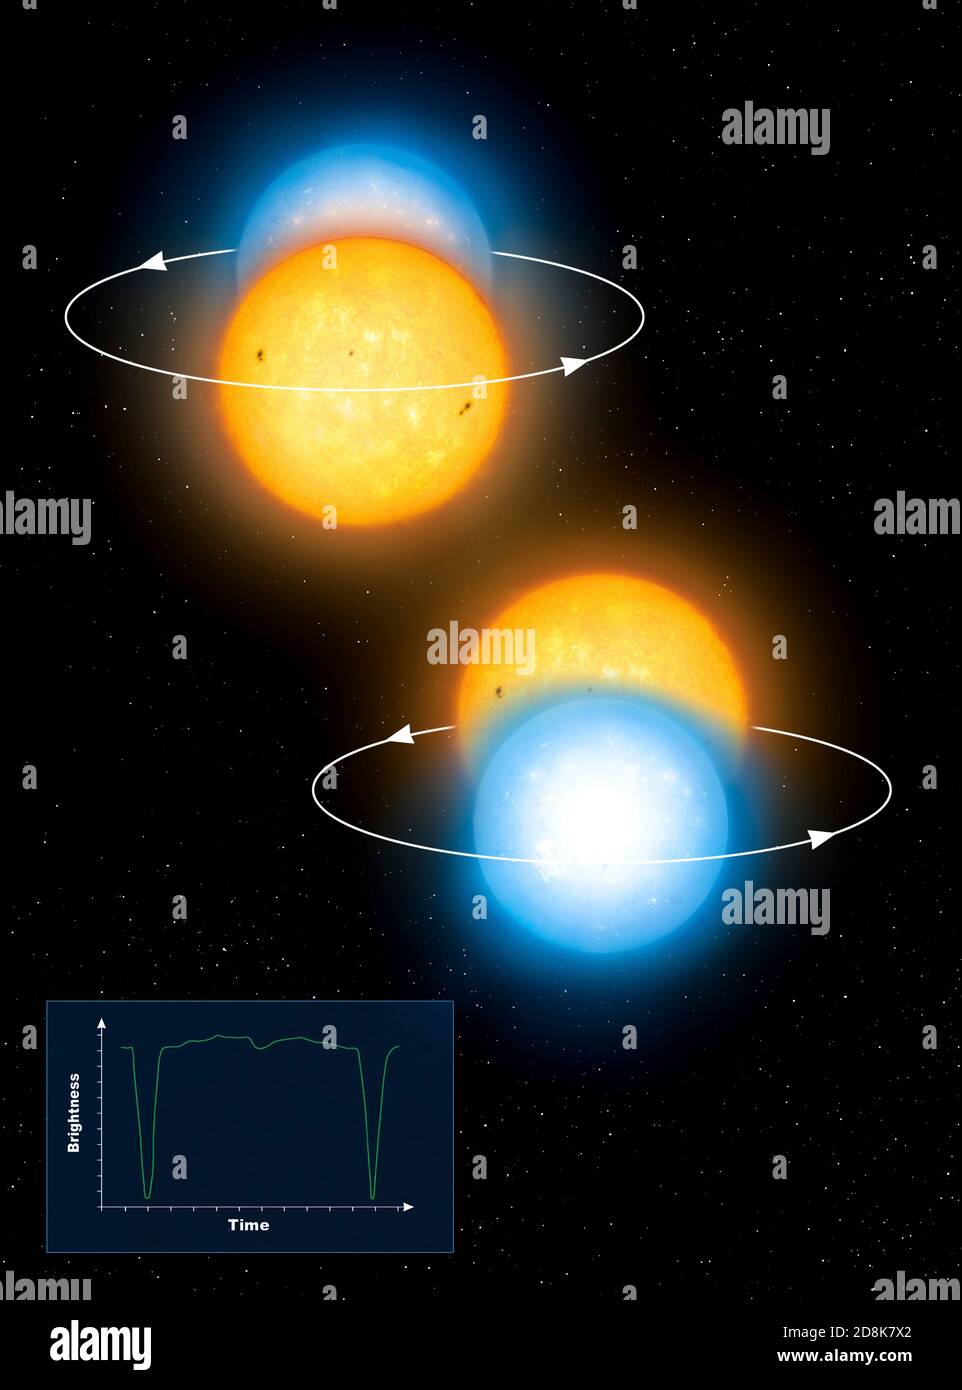 Illustrazione dei sistemi a stella binaria eclissi noti come Algols. Algol è il prototipo di stelle variabili binarie che eclissano, in cui due stelle in orbita reciproca tagliano periodicamente la luce dell'un l'altro come visto dalla Terra. Algol comprende una stella arancione e una stella bianca calda. Foto Stock